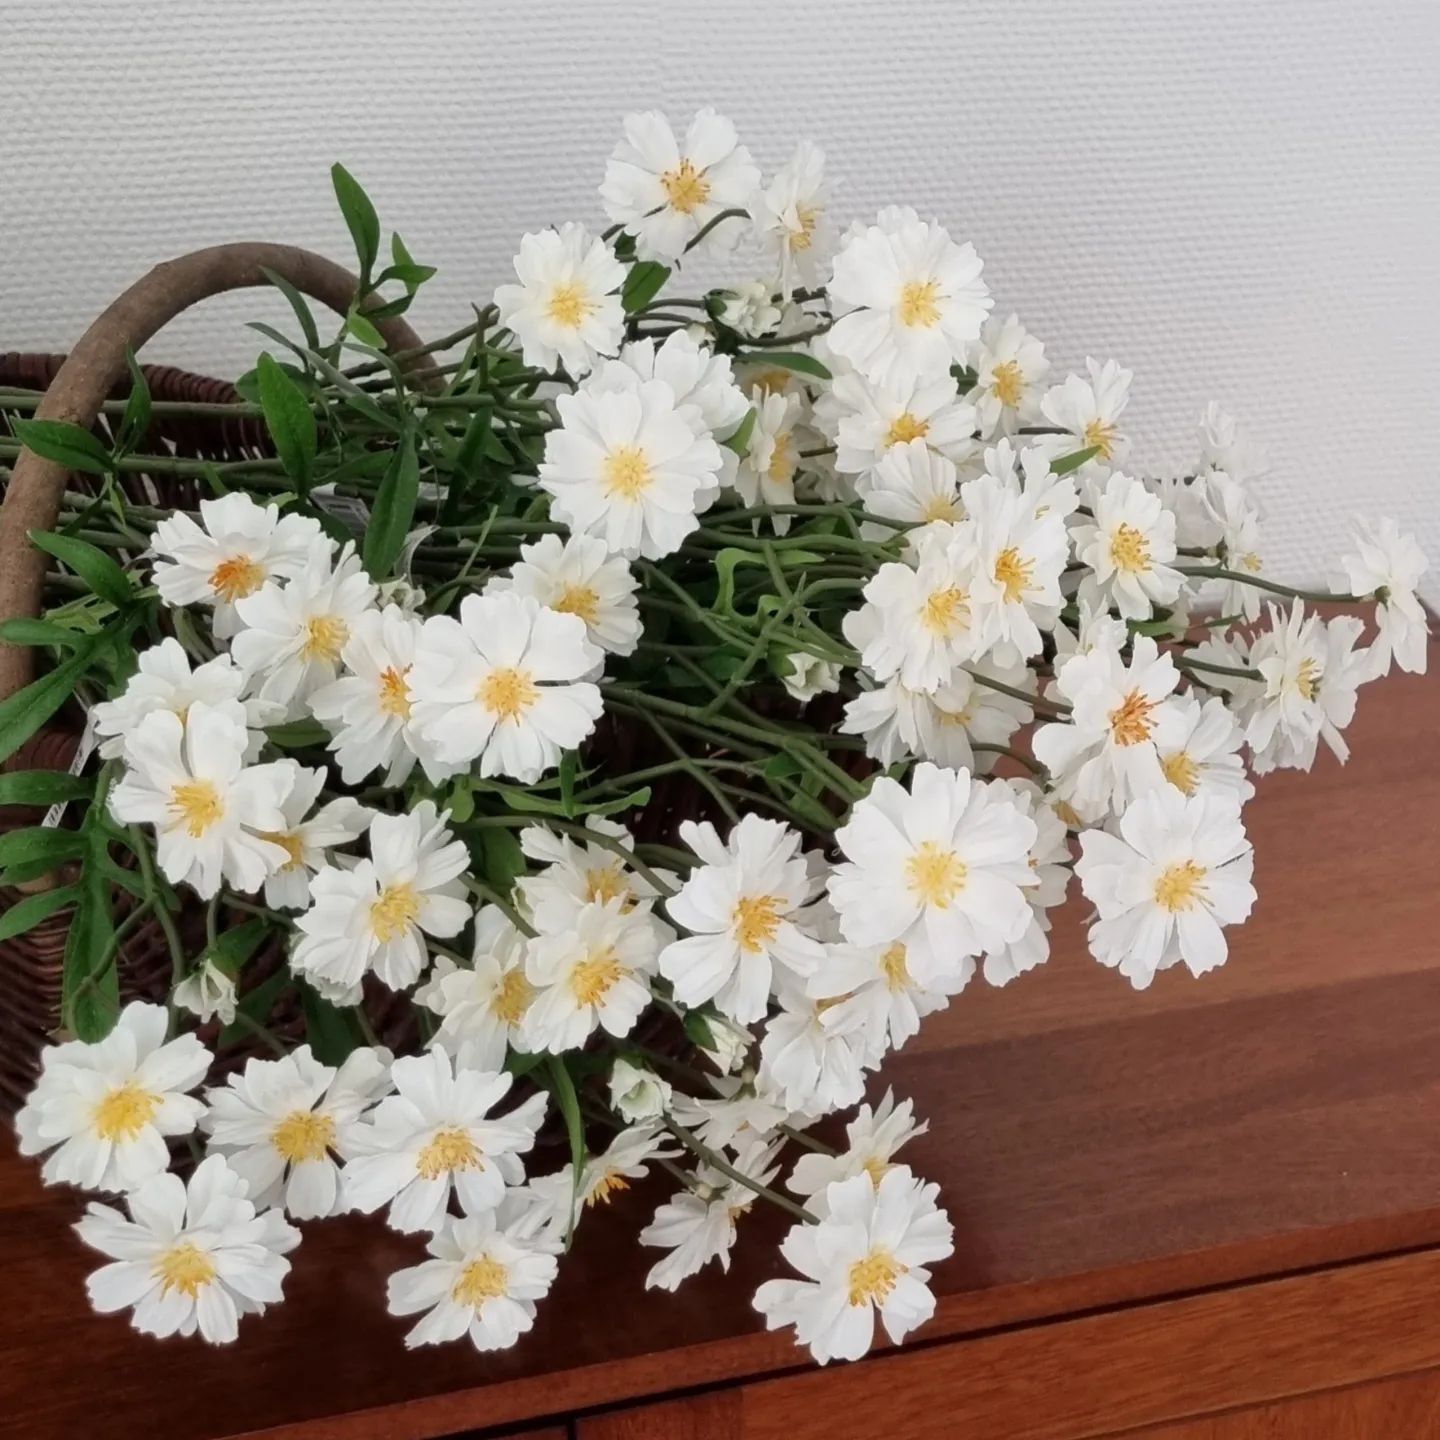 Cosmos søde hvide og gule blomster